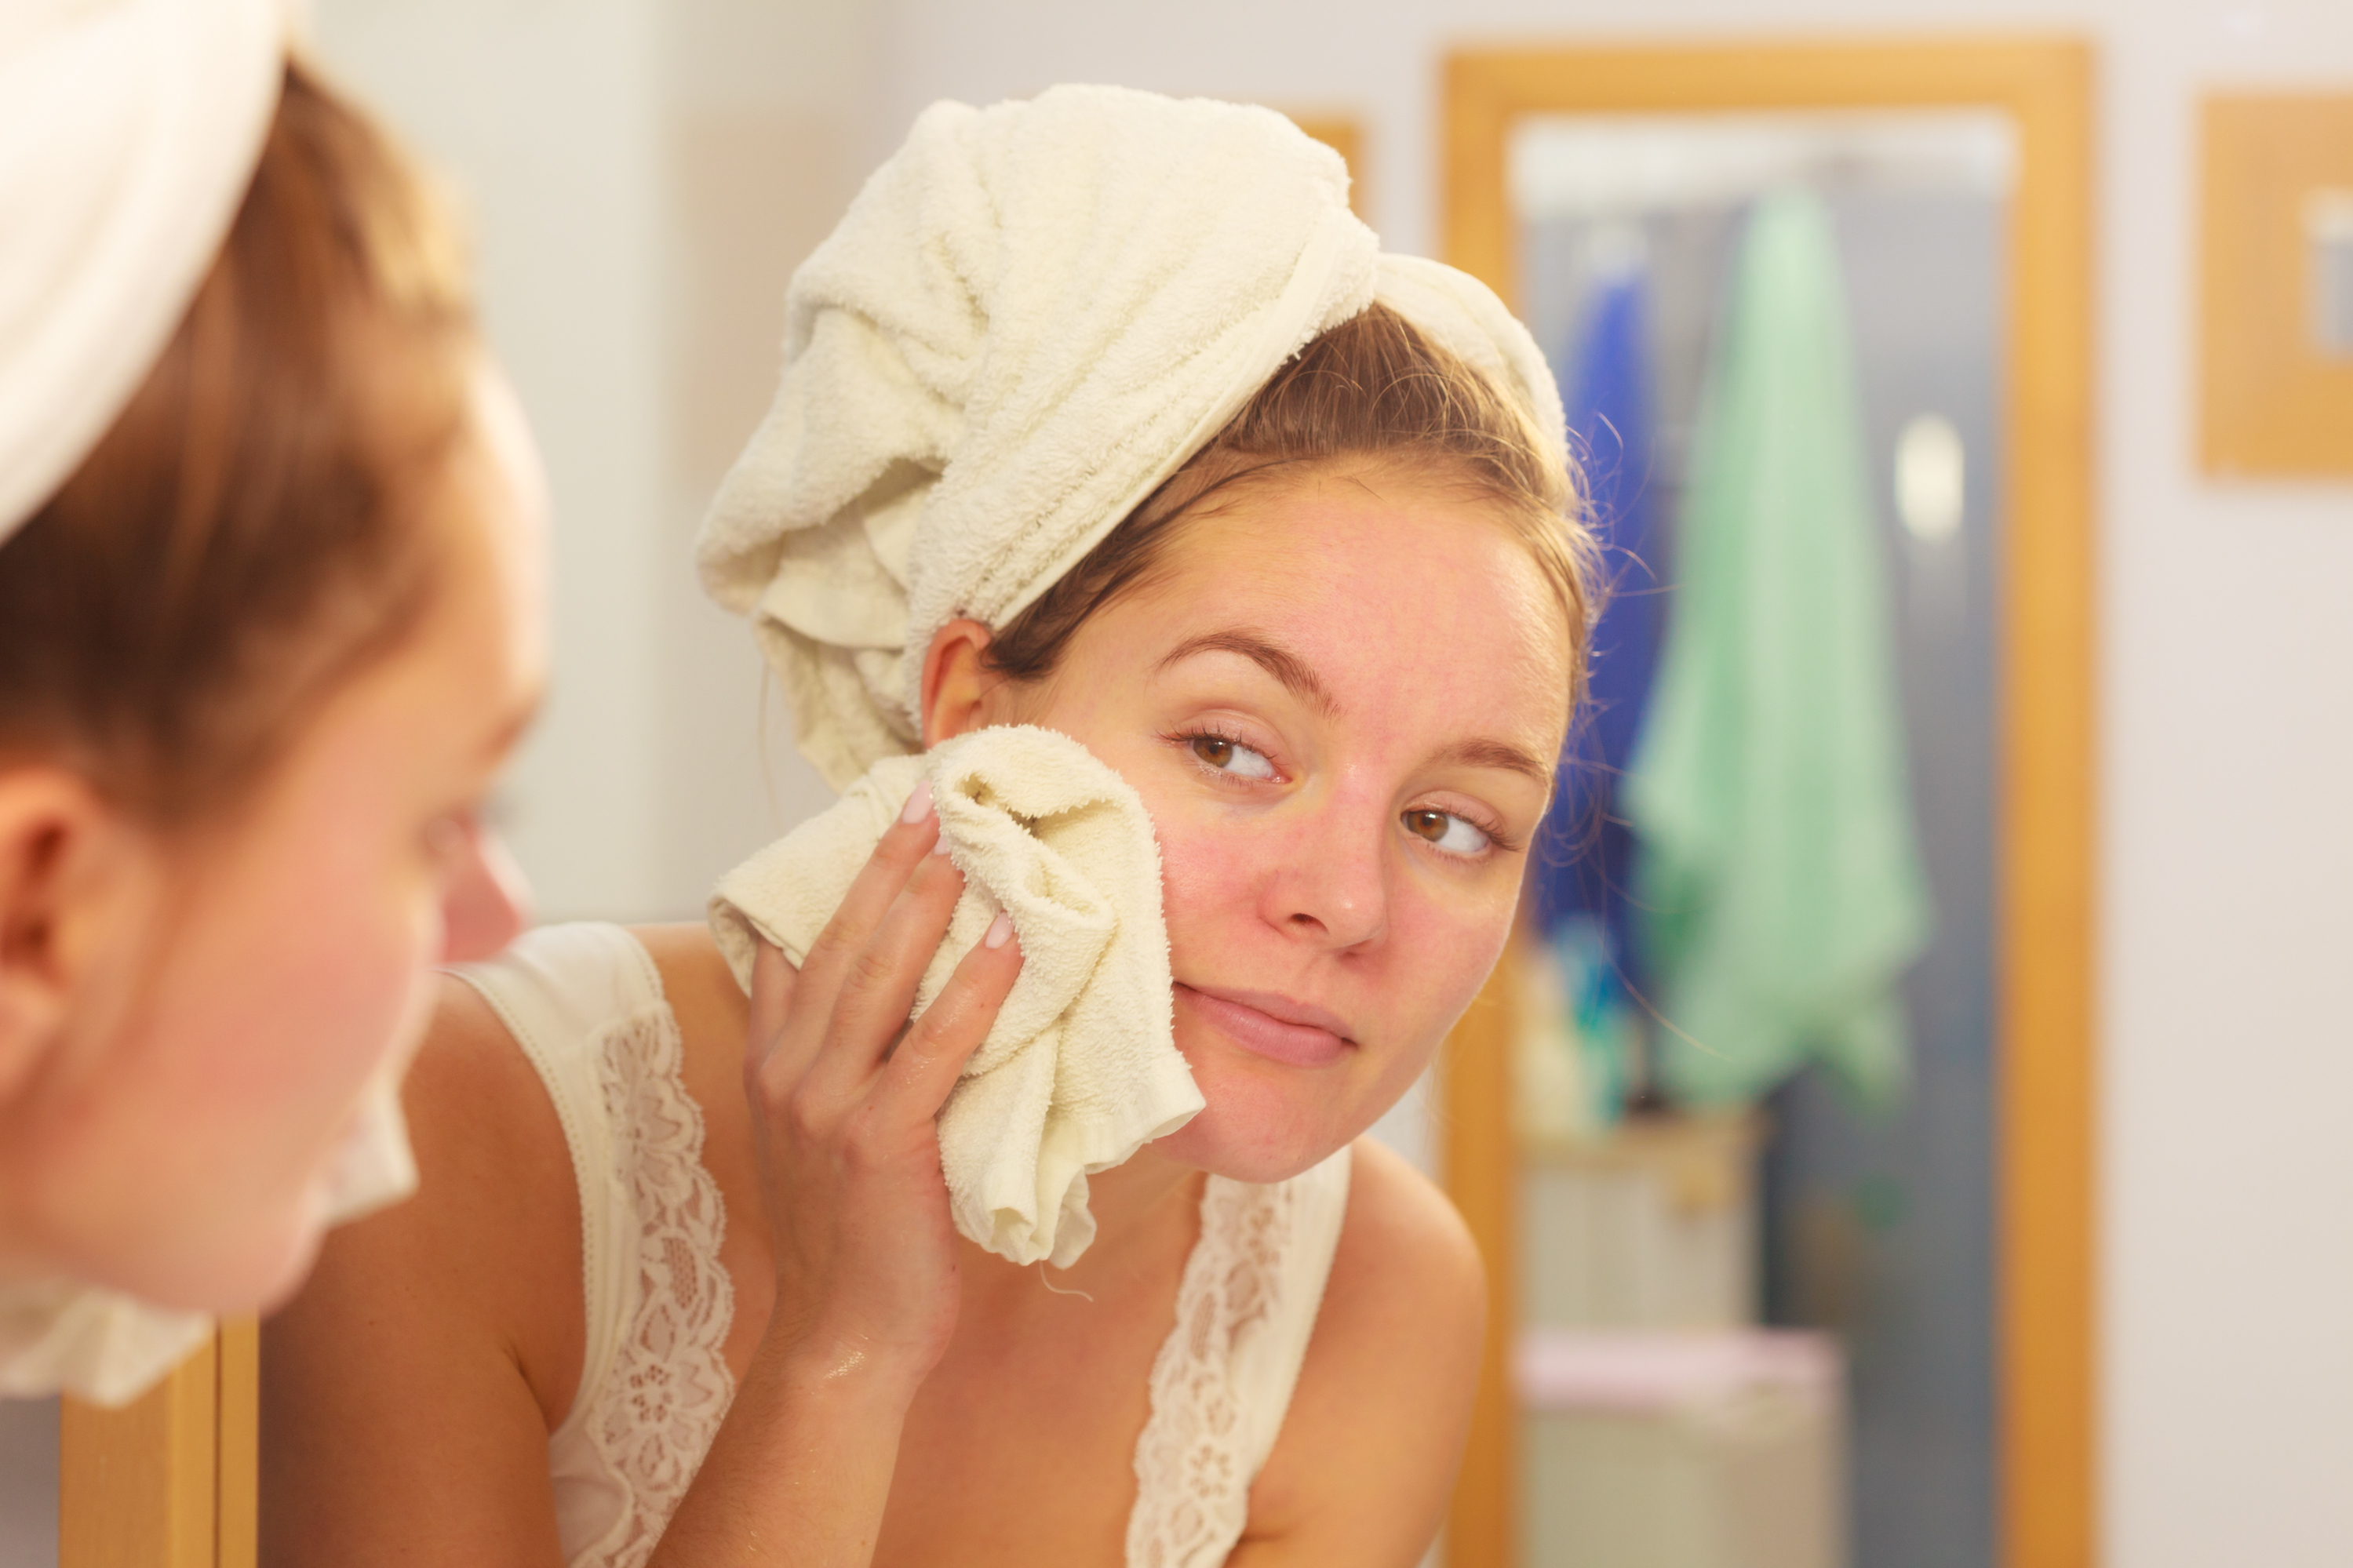 Para que la piel respire, es importante limpiar el rostro cada noche. (Foto Prensa Libre: Shutterstock)